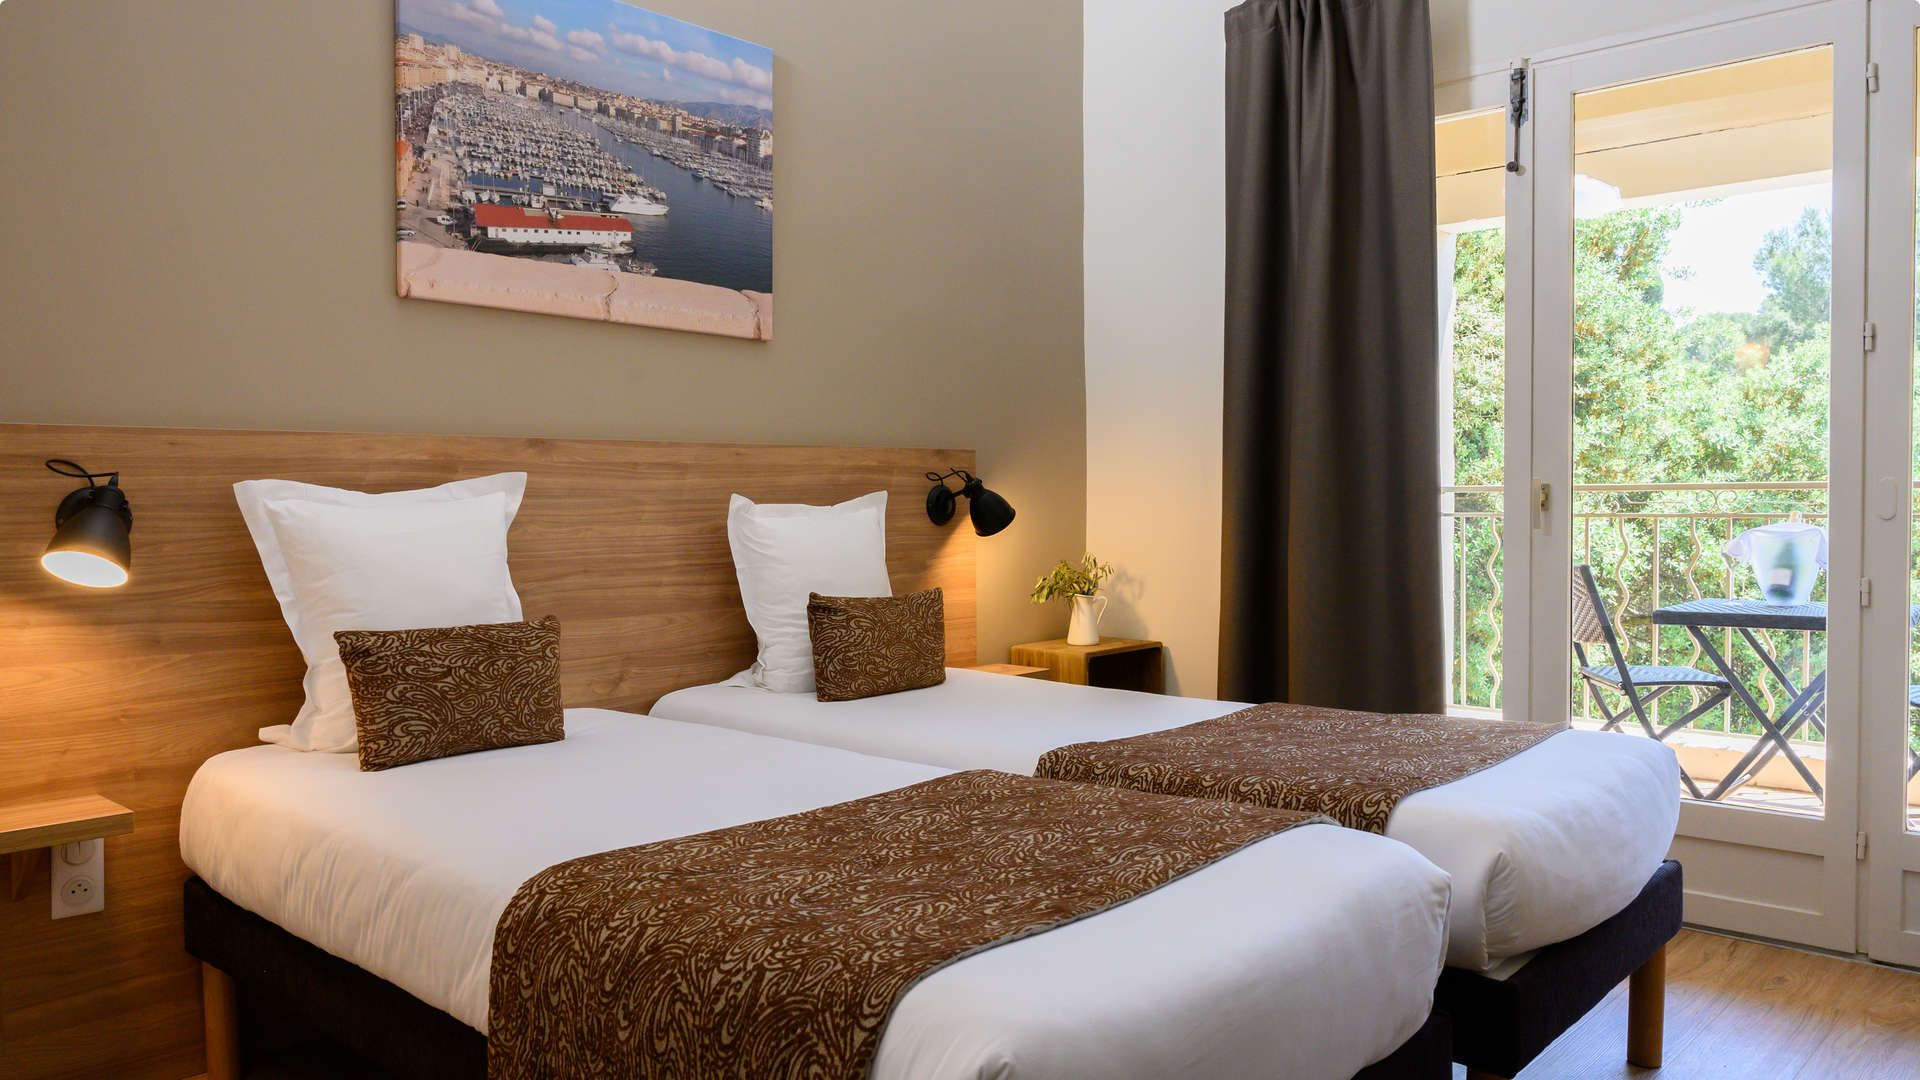 Vue de profil sur 2 lit simples aux tons marrons - hotel restaurant les baux de provence - Belesso